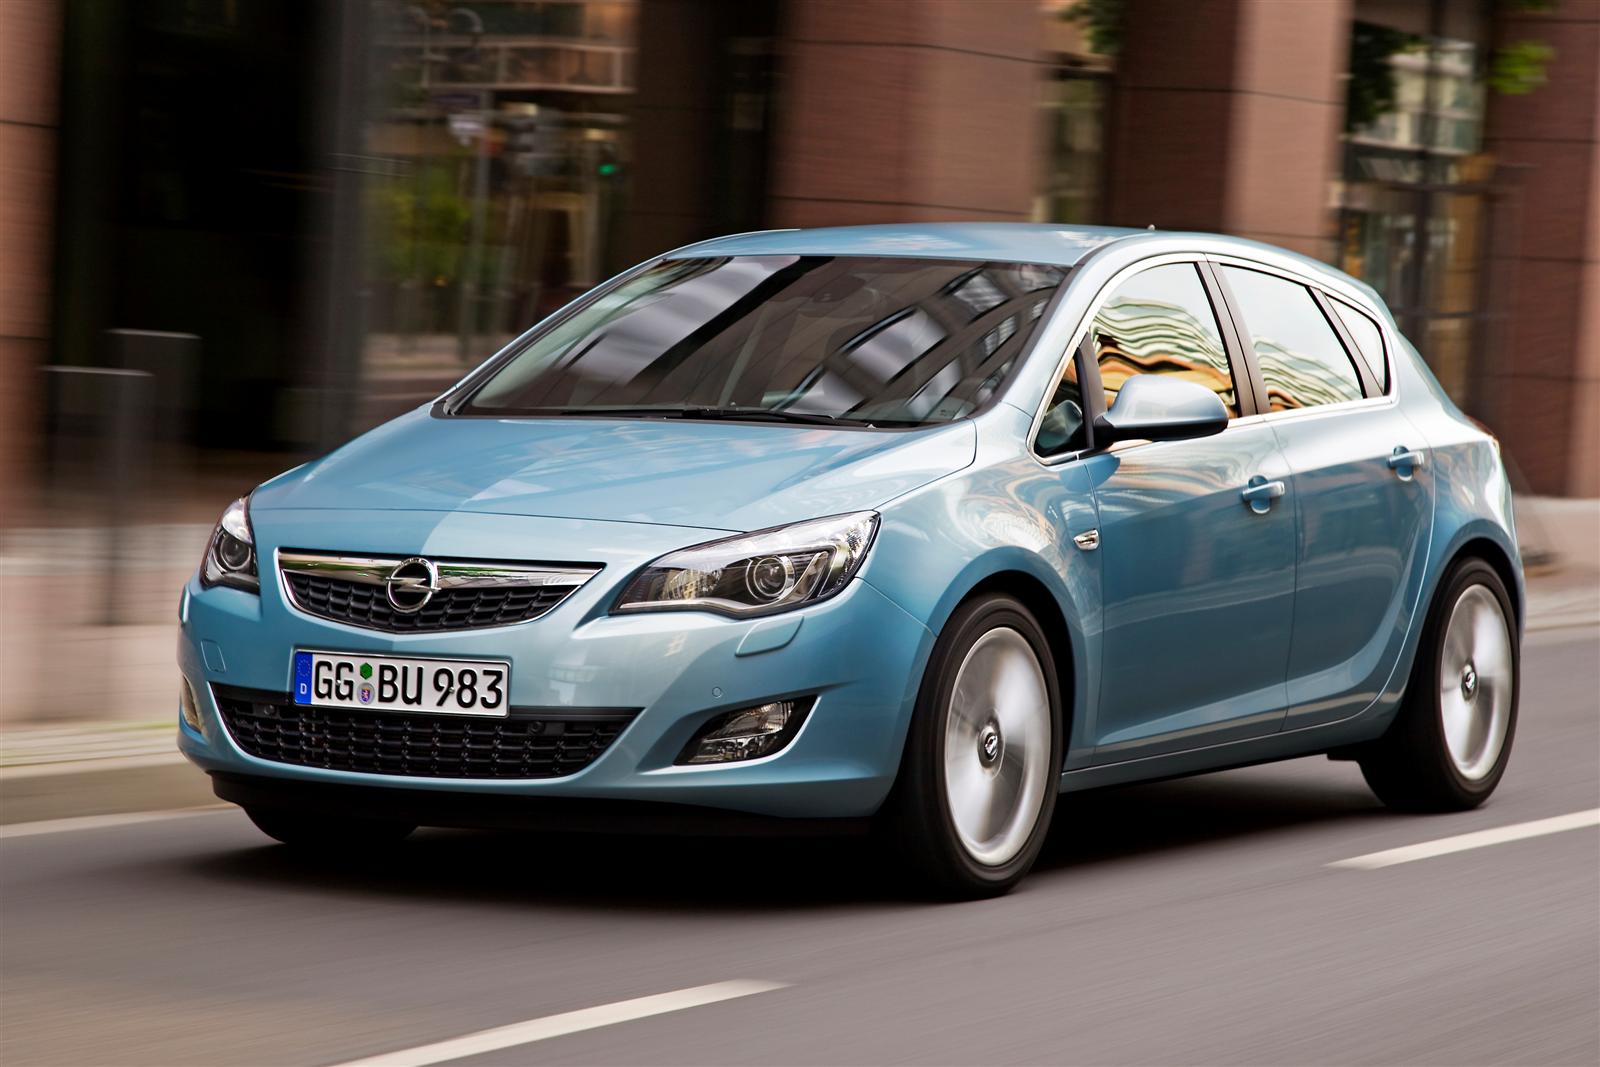 Ocho años de garantía para el Opel Astra en Francia